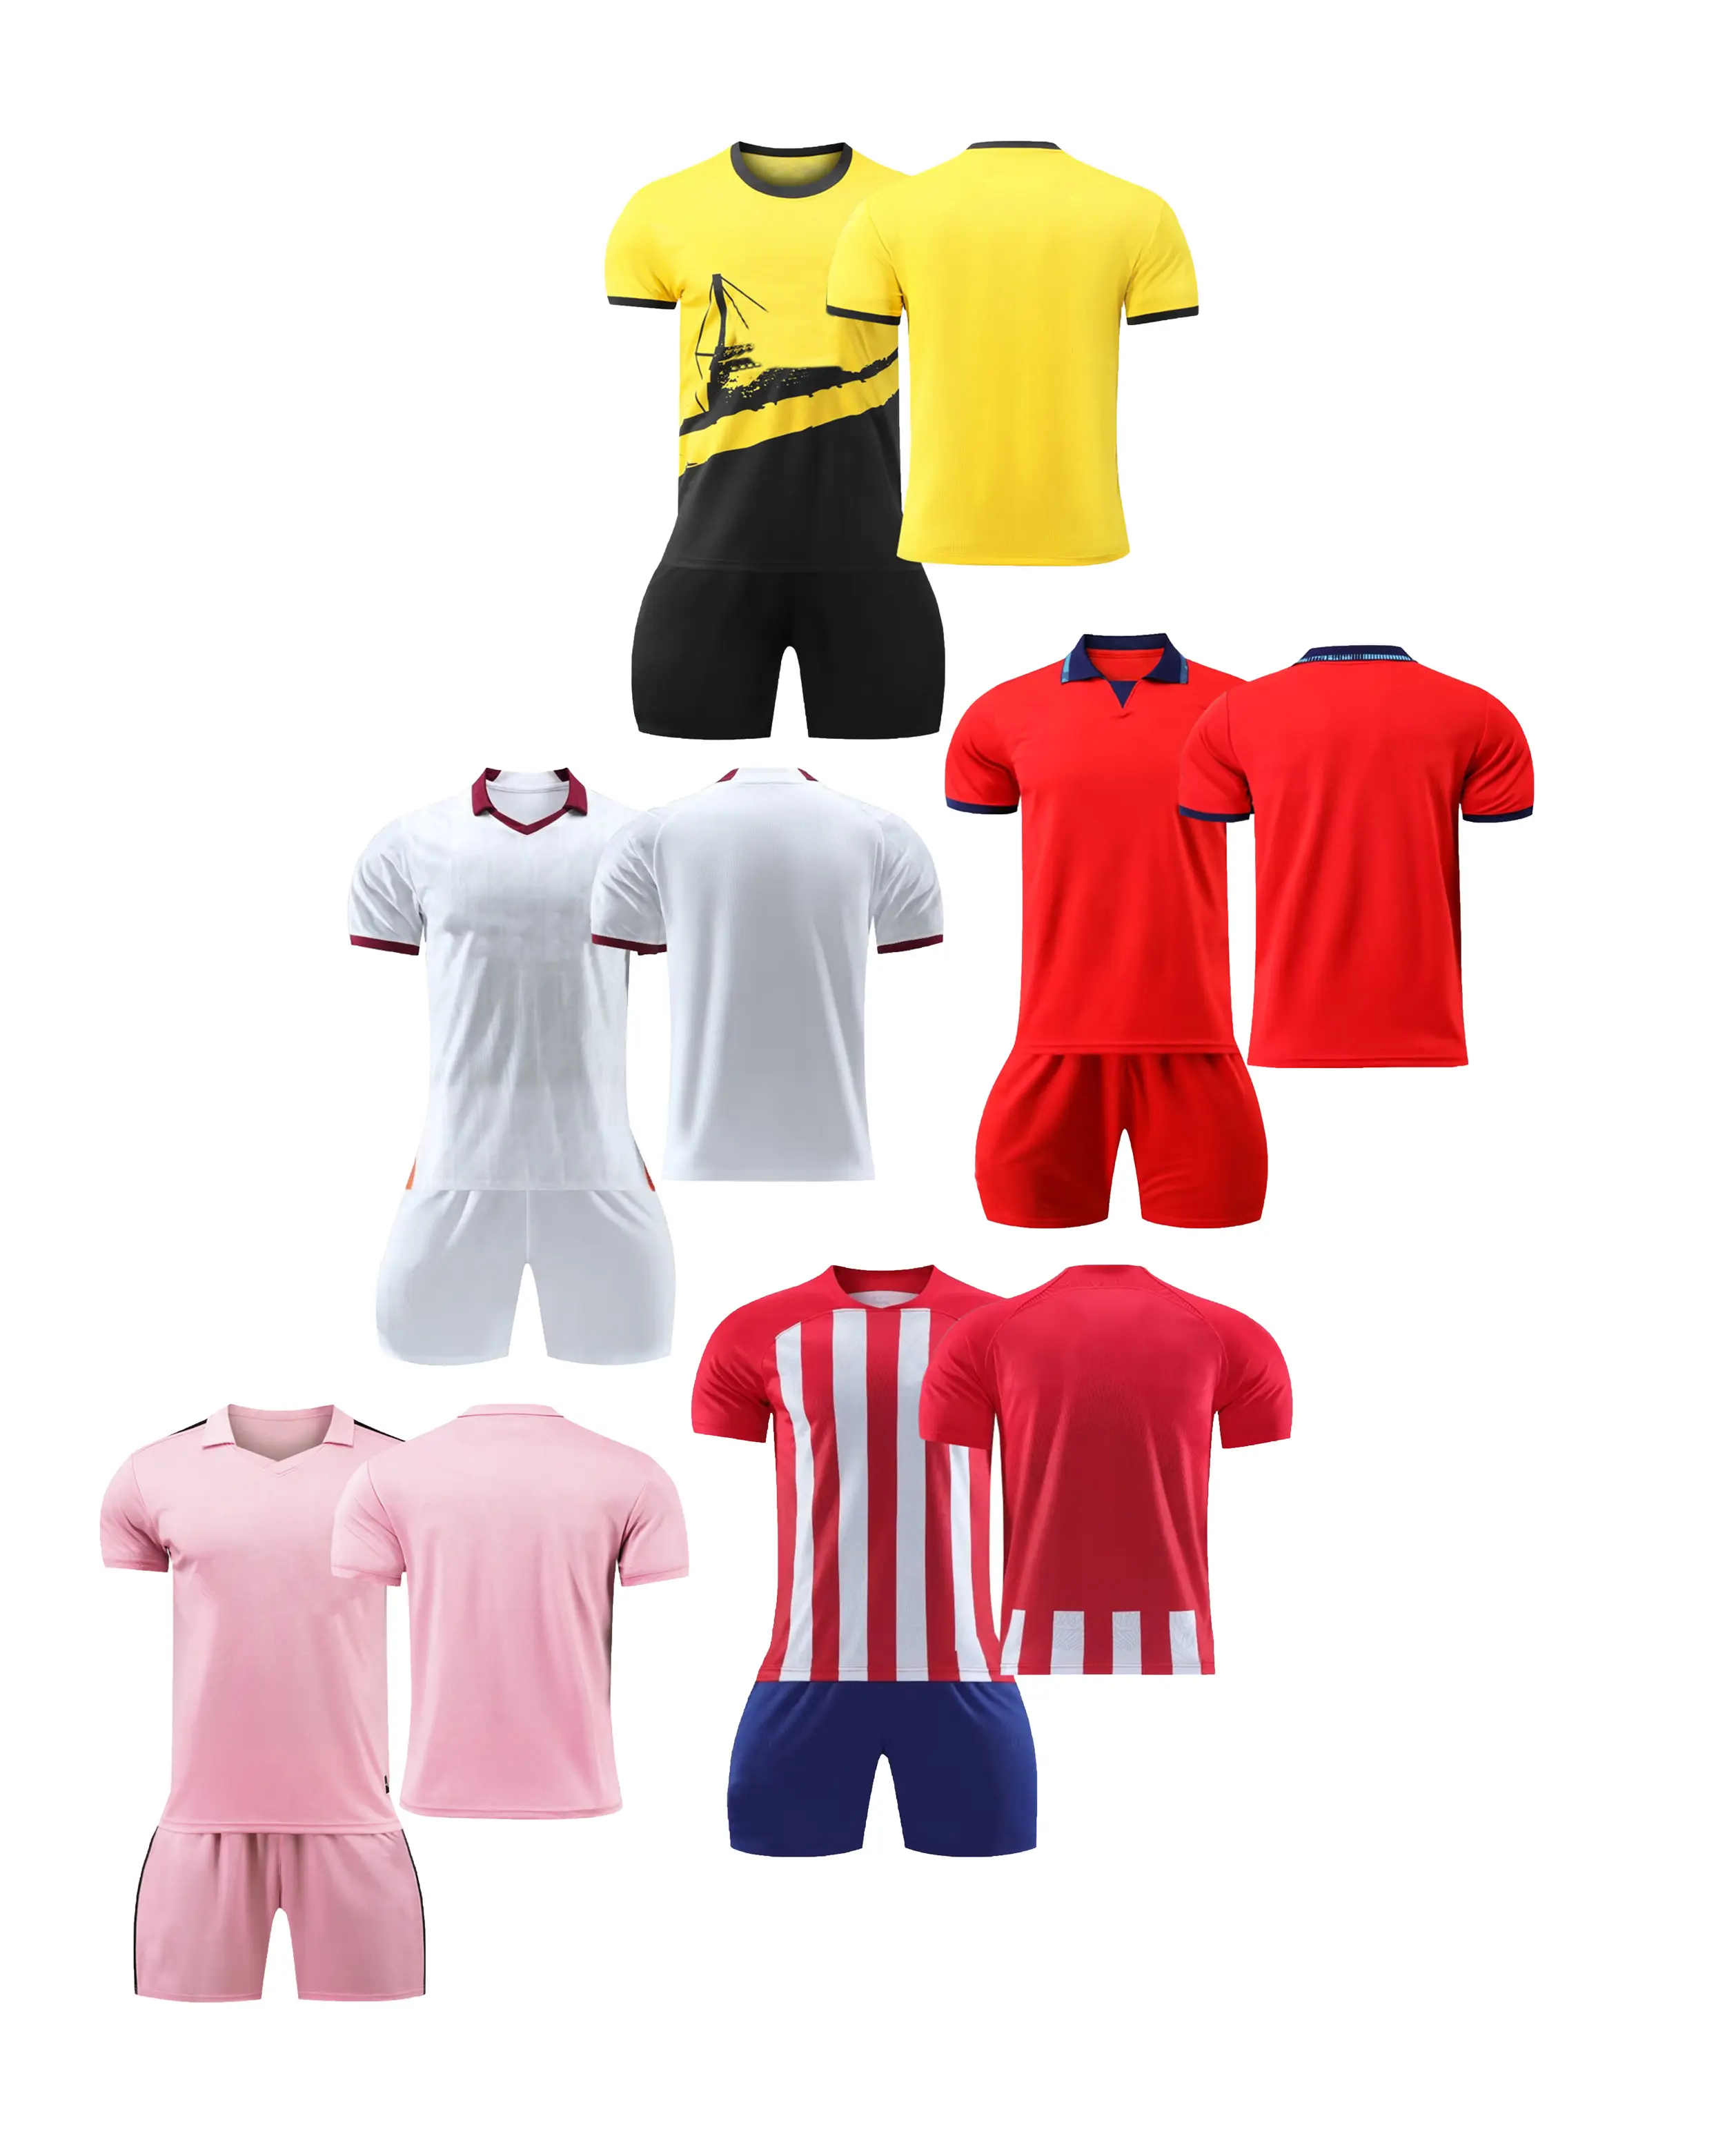 ชุดเสื้อฟุตบอลรุ่น Illuminated 24-25 ชุดสําหรับผู้ใหญ่และเด็ก หมายเลขพิมพ์เสื้อฝึกซ้อมในสต็อก